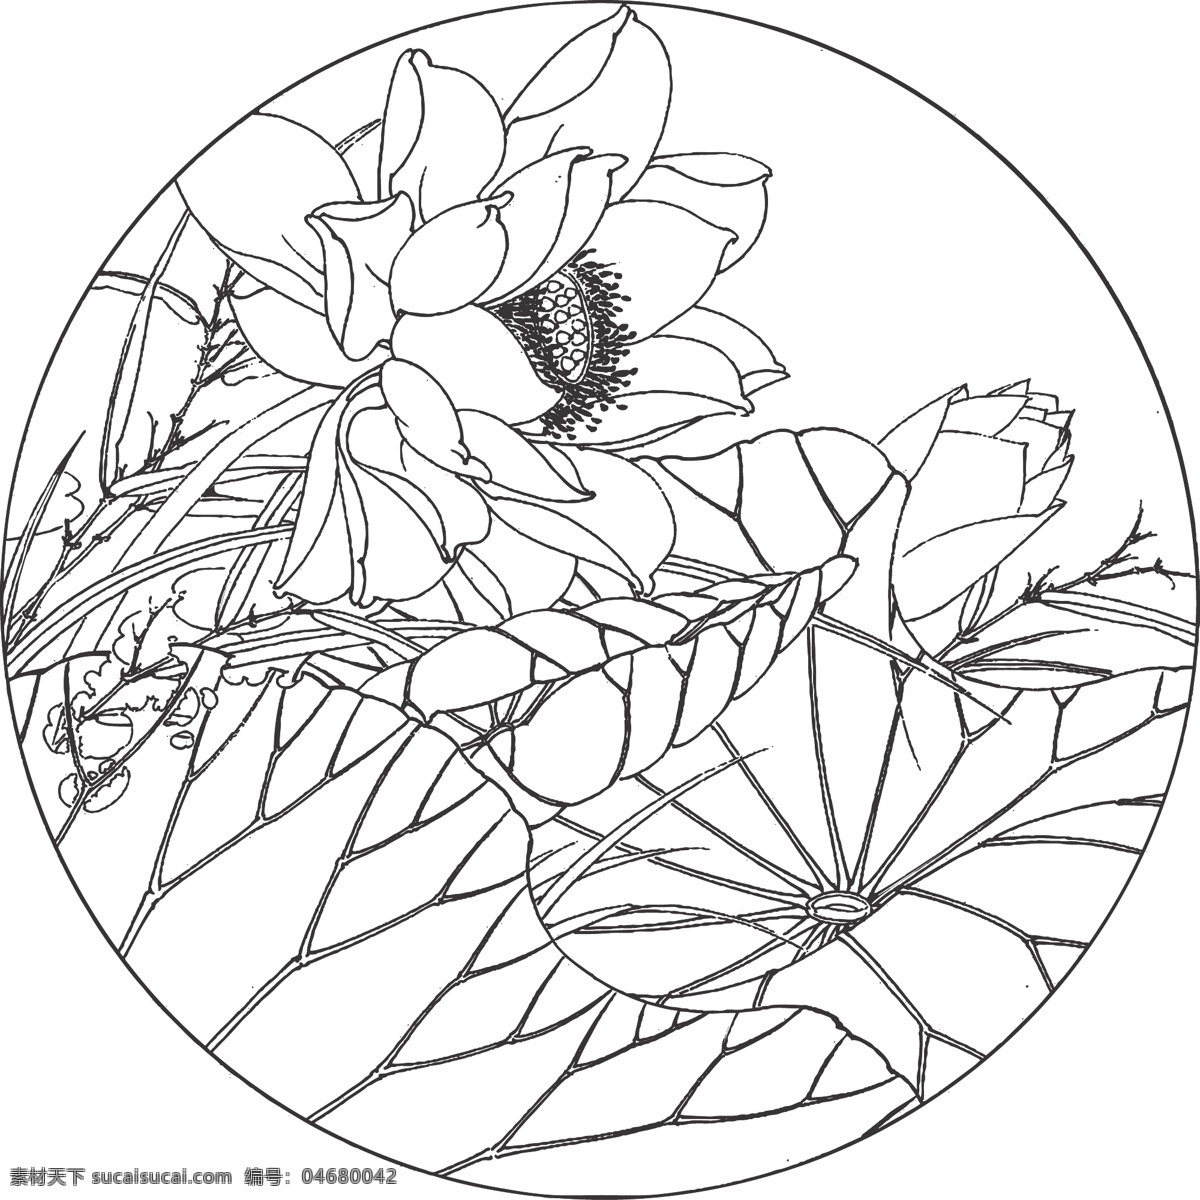 荷花 花卉 植物 观赏 线条 矢量 传统 民俗 装饰 插画 白描 花卉白描图 文化艺术 绘画书法